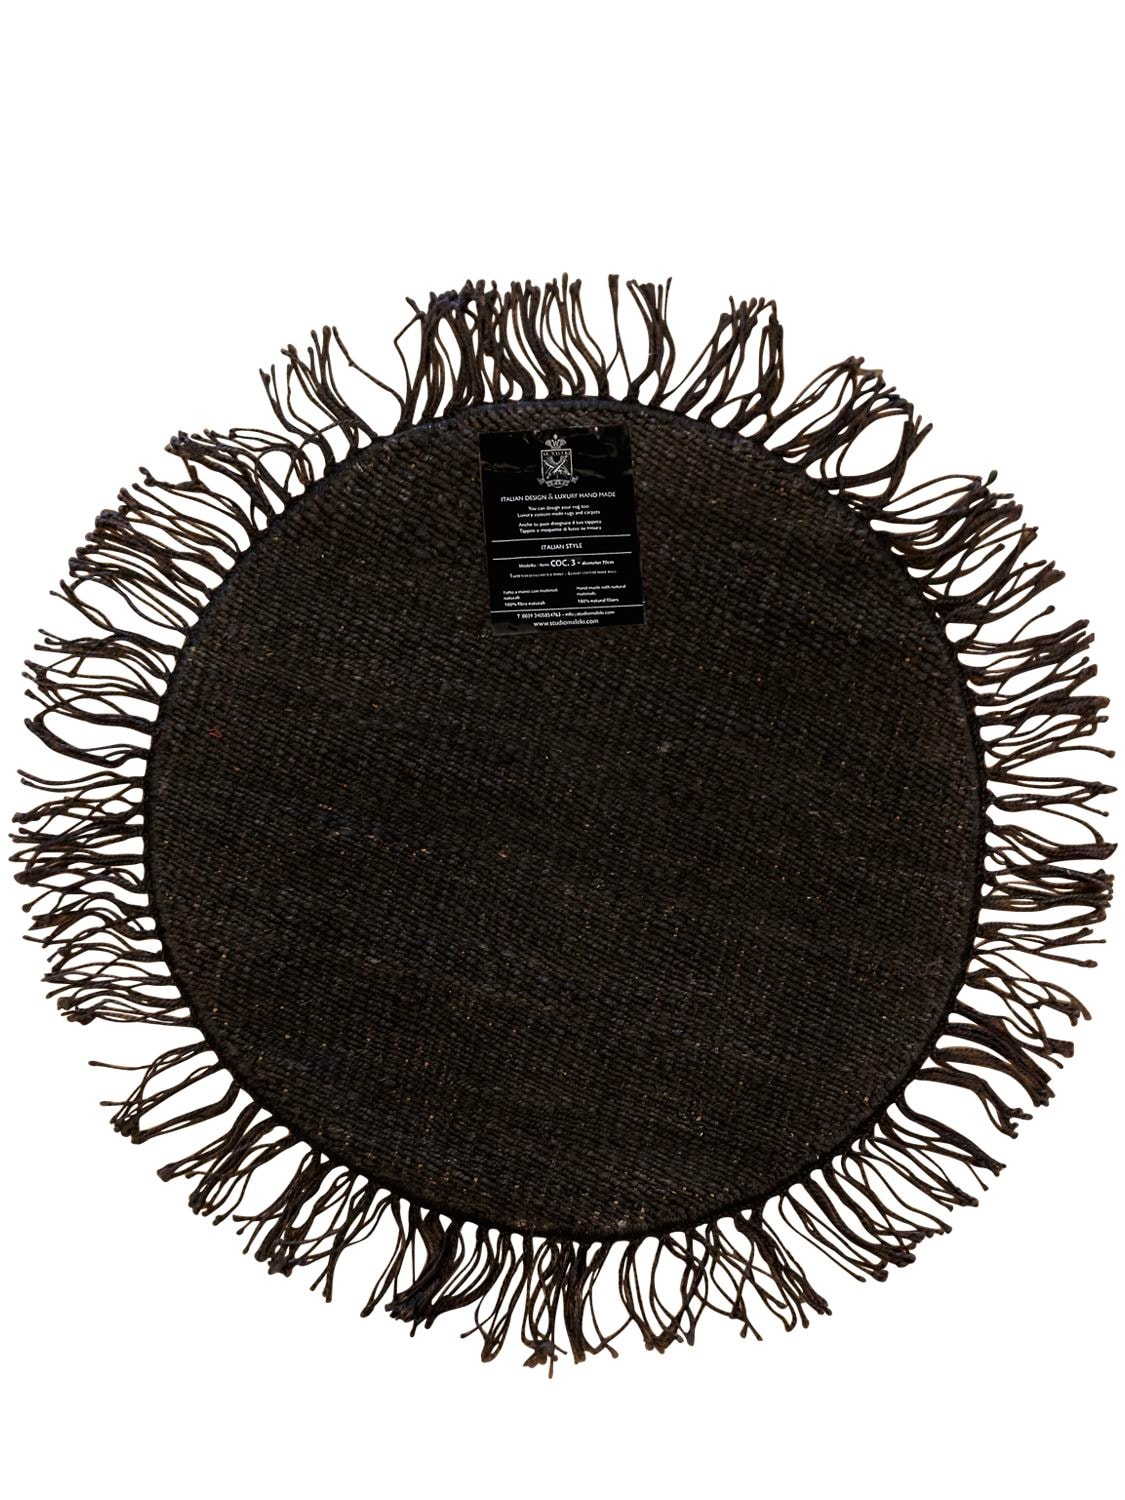 Shop Studio Maleki Cocco Round Handmade Jute Rug W/ Fringes In Black